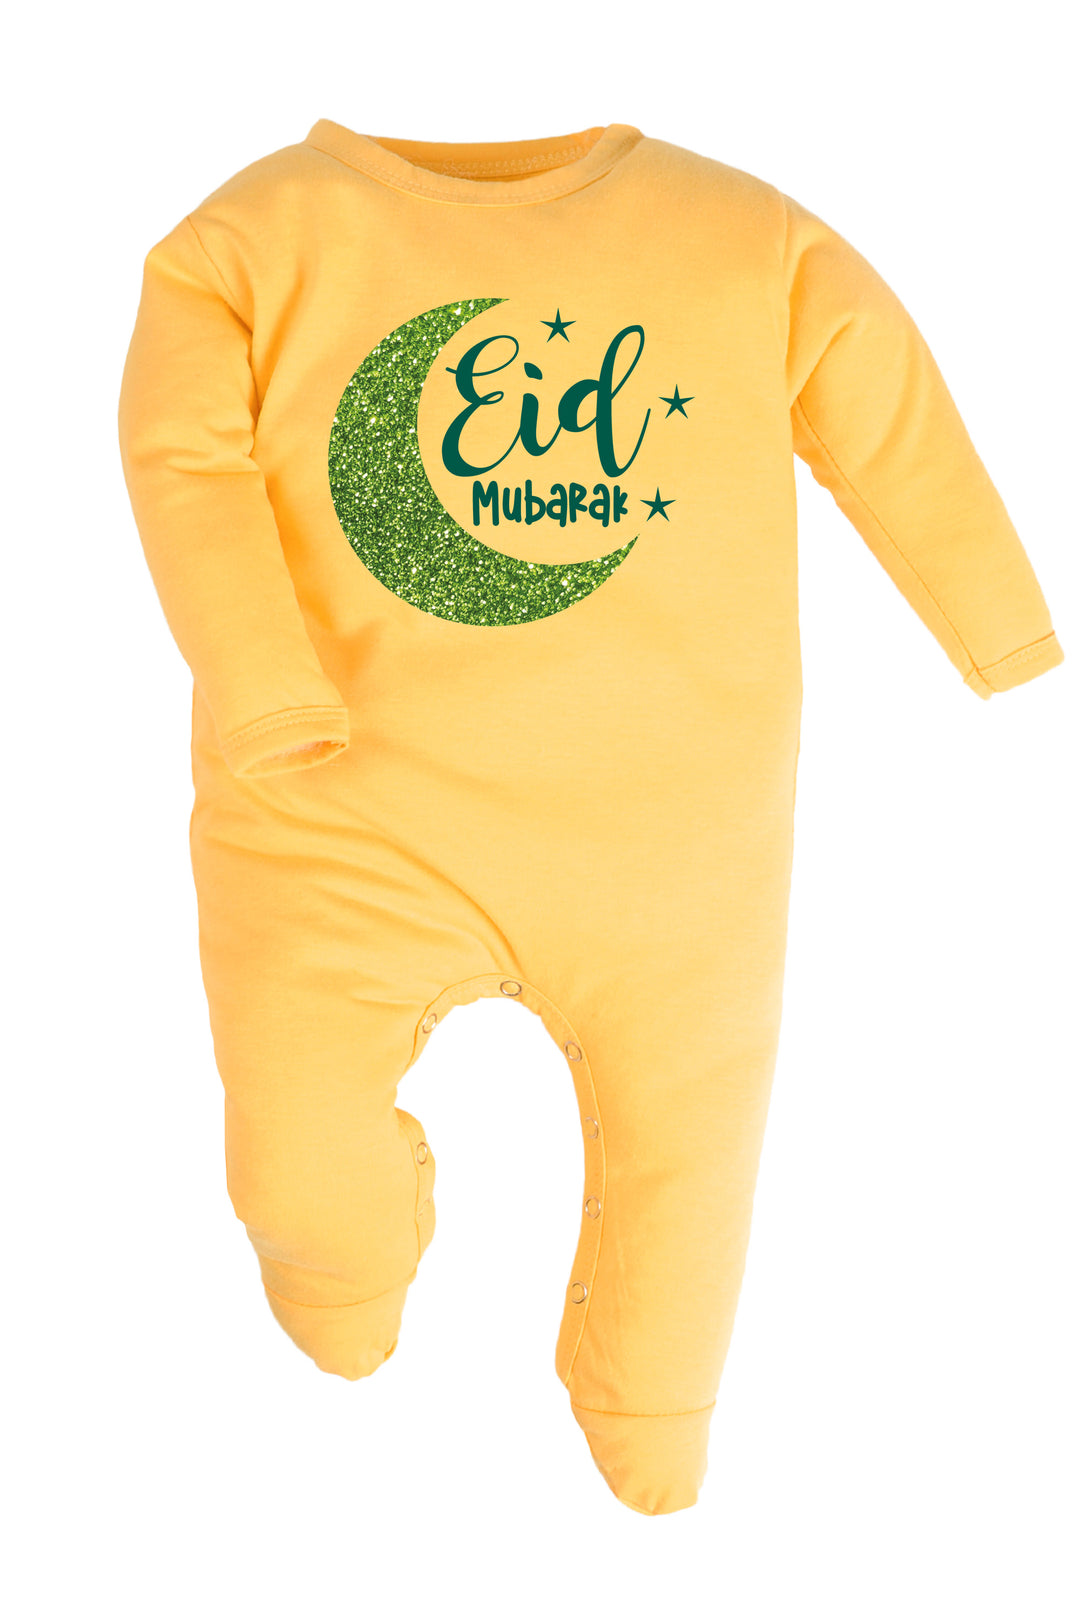 Eid Mubarak Baby Romper | Onesies